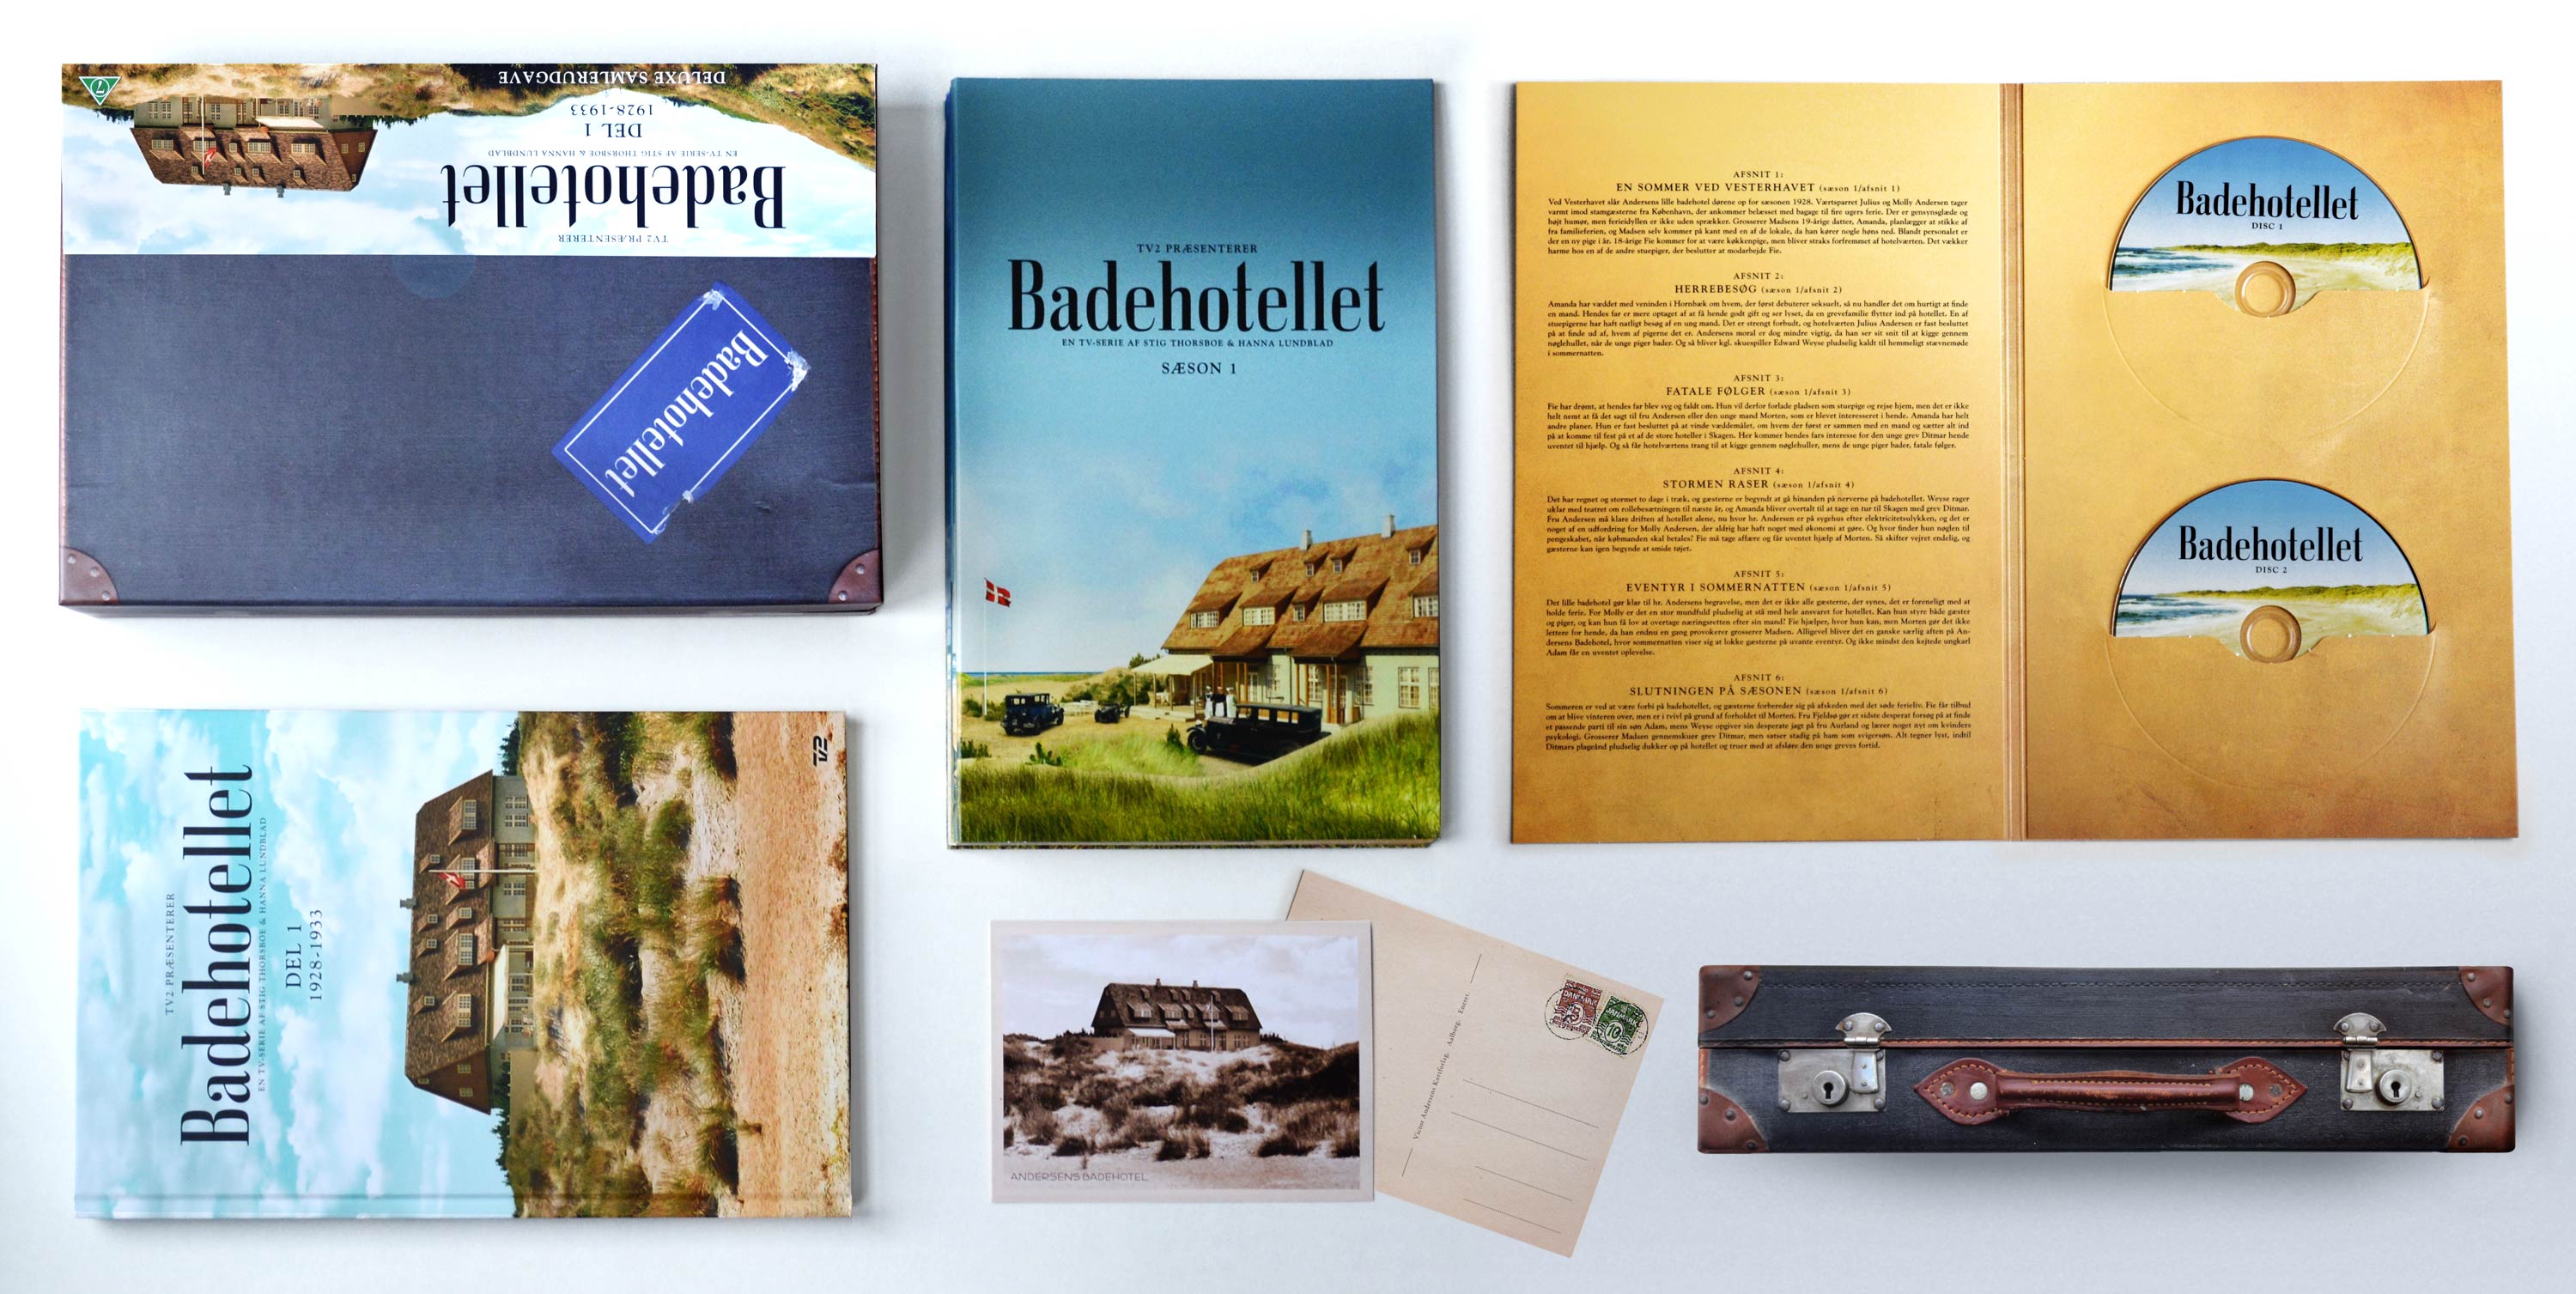 Grafisk Design - DVD Cover - DVD Box - Badehotellet